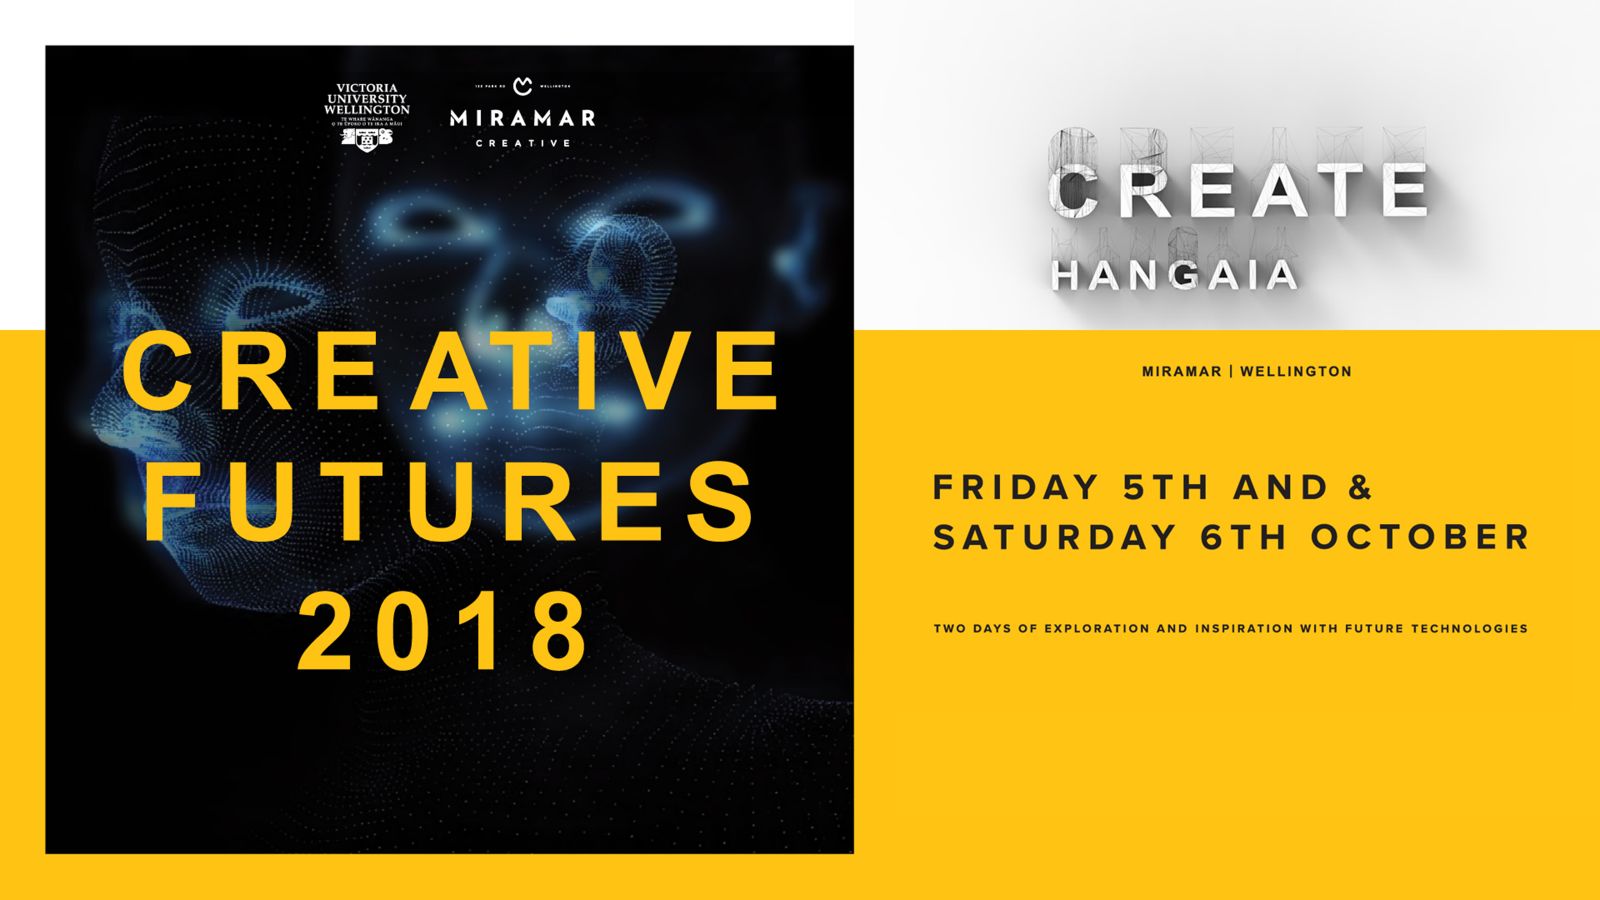 Creative Futures 2018 event